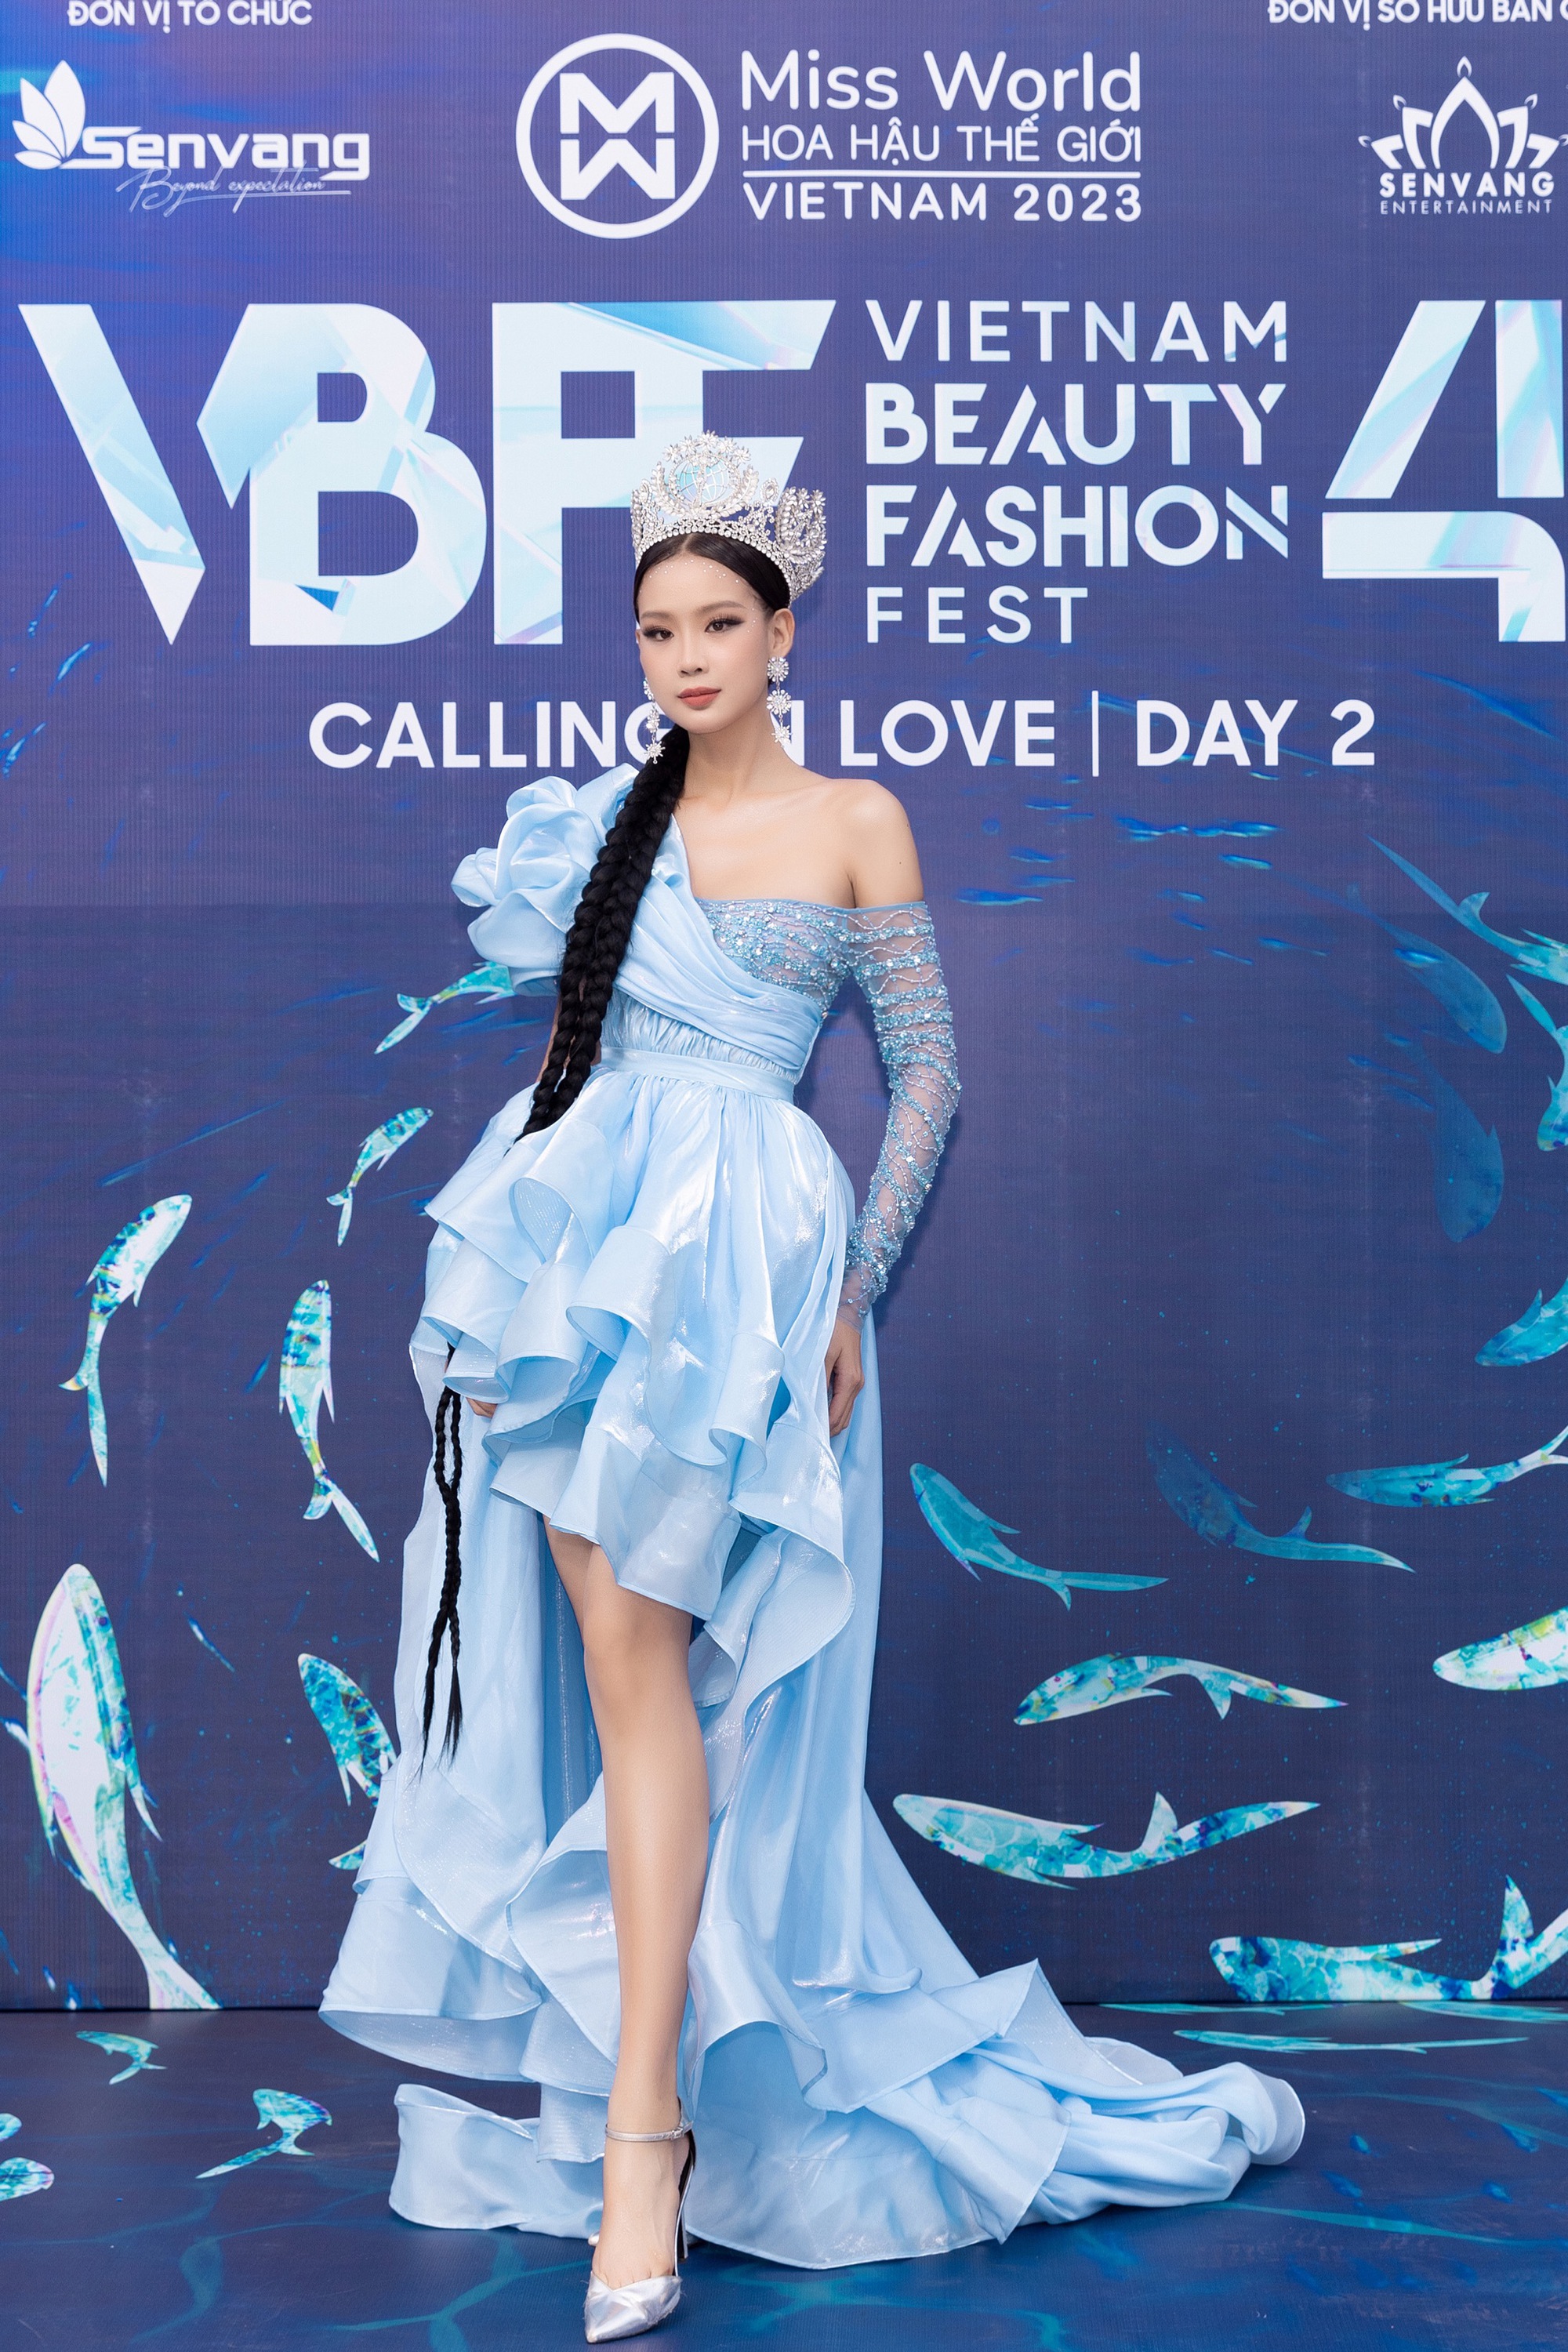 Đông đảo người đẹp khoe sắc trên thảm đỏ Vietnam Beauty Fashion Fest 4  - Ảnh 4.